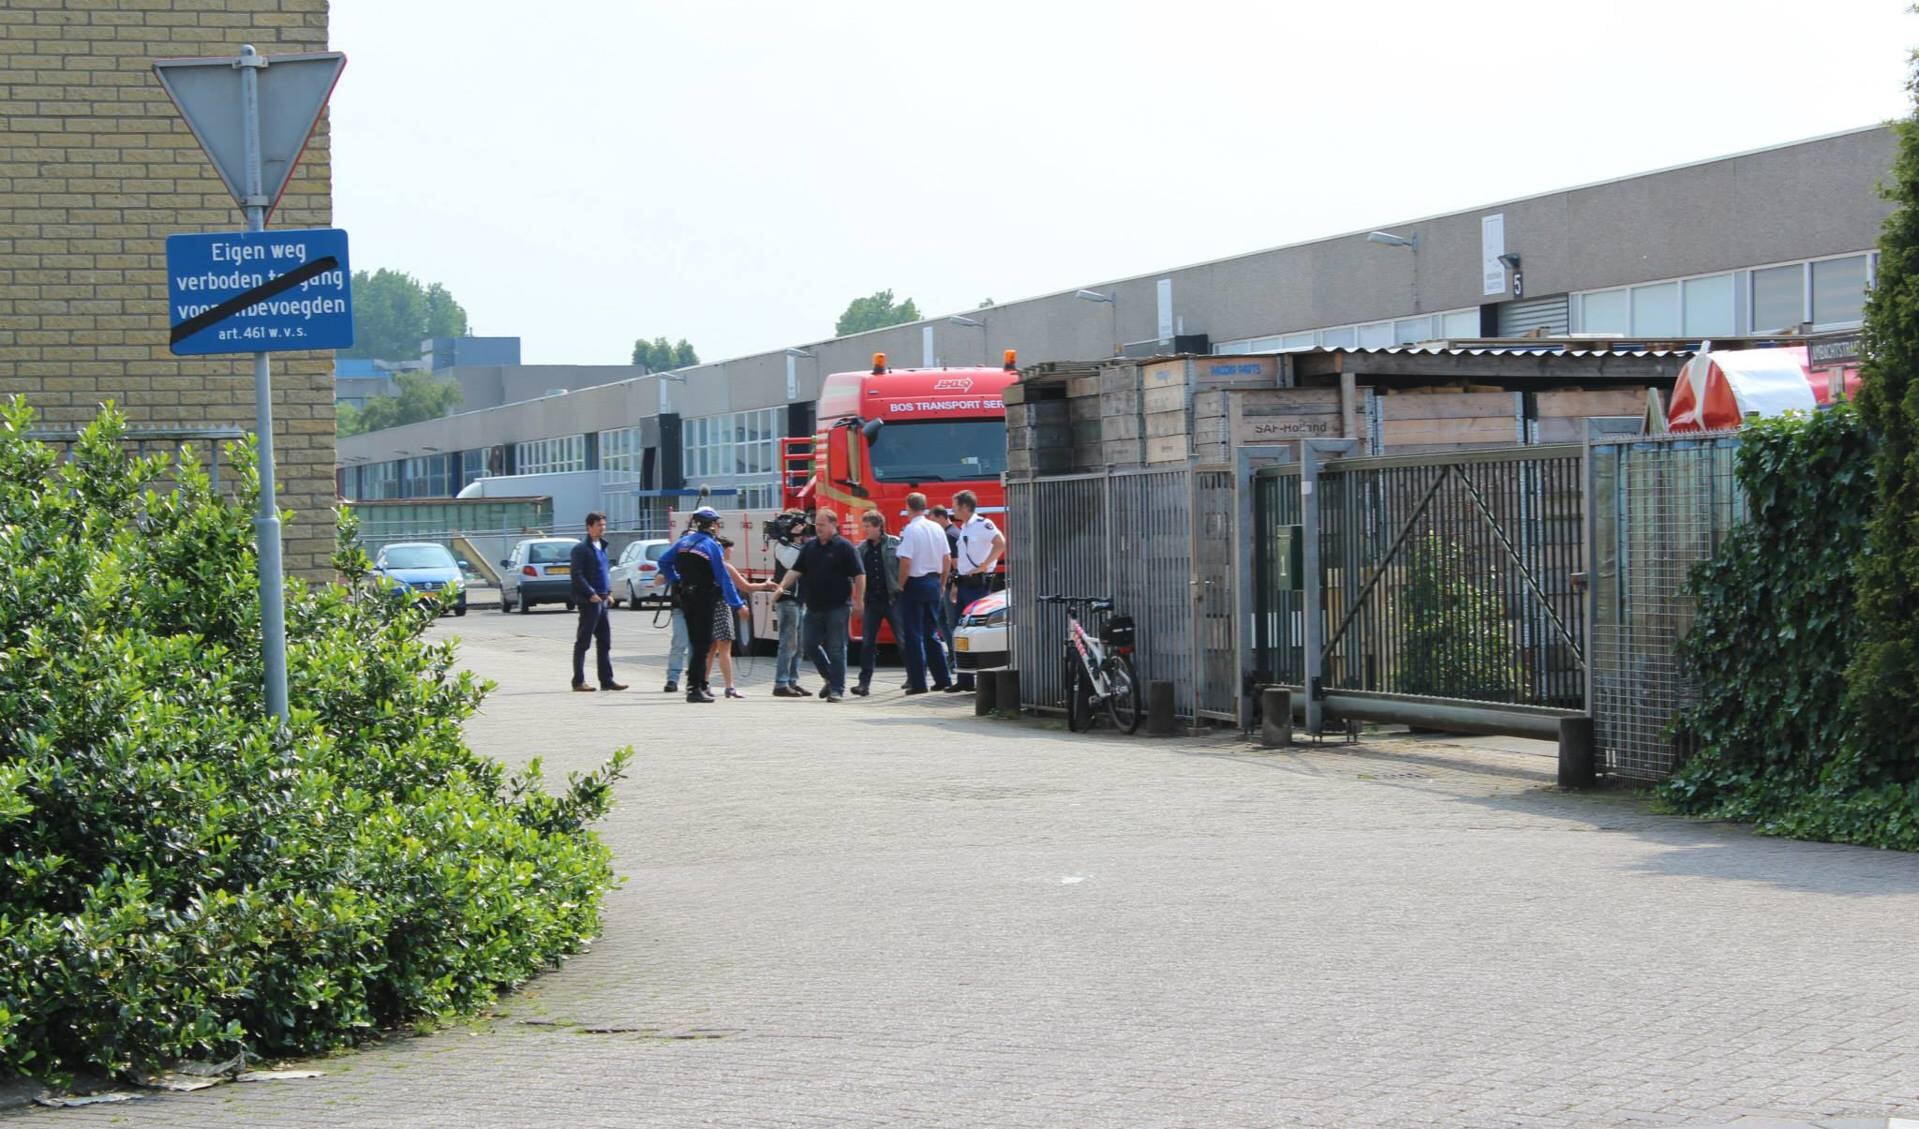 Filmploeg en Bos Transportservice wachten verdachte op in  Ambachtstraat.